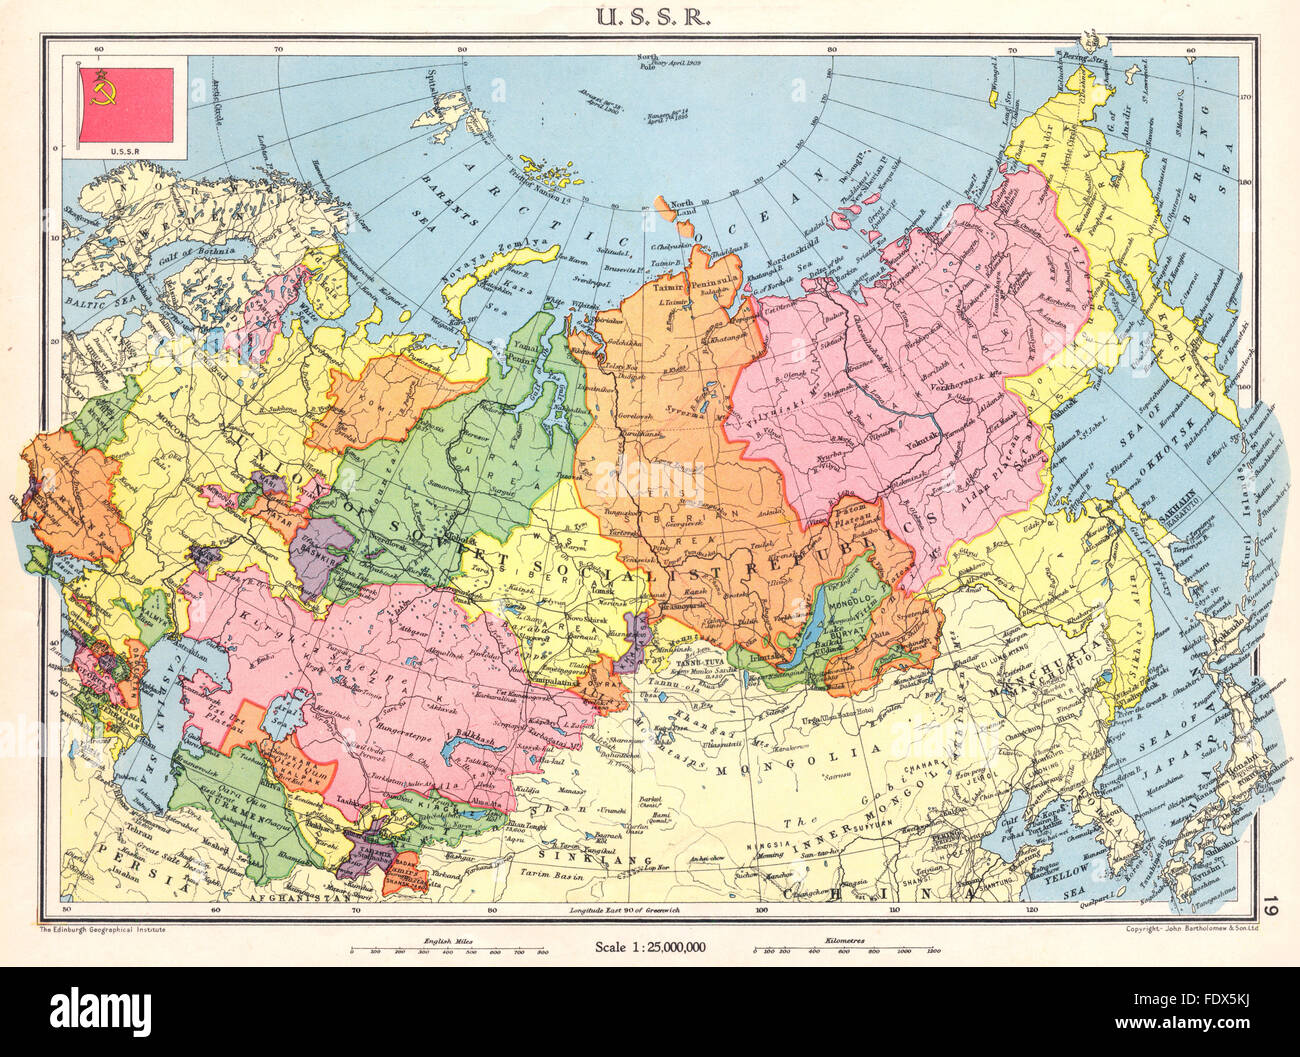 RUSSIA: U S S R. Unione Sovietica, 1938 Vintage map Foto Stock